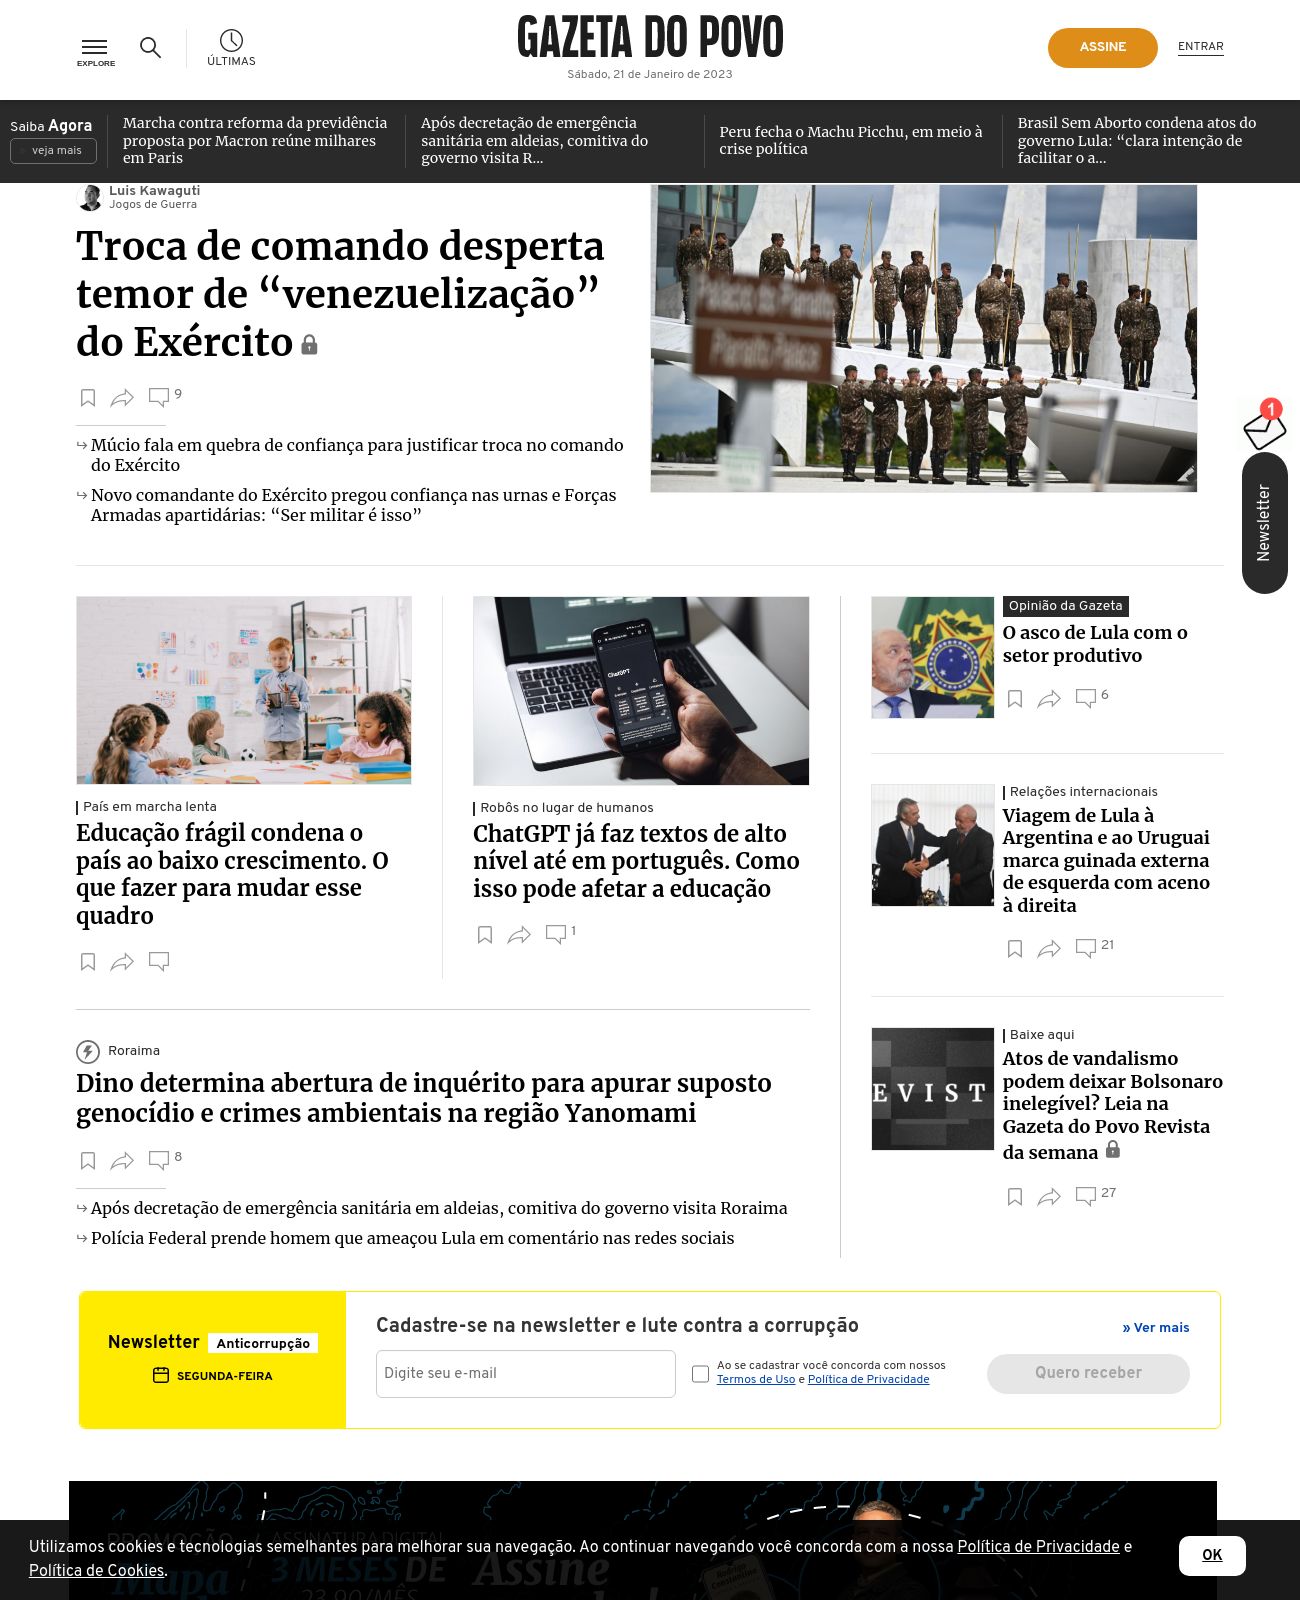 Gazeta do Povo at 2023-01-21 22:50:59-03:00 local time